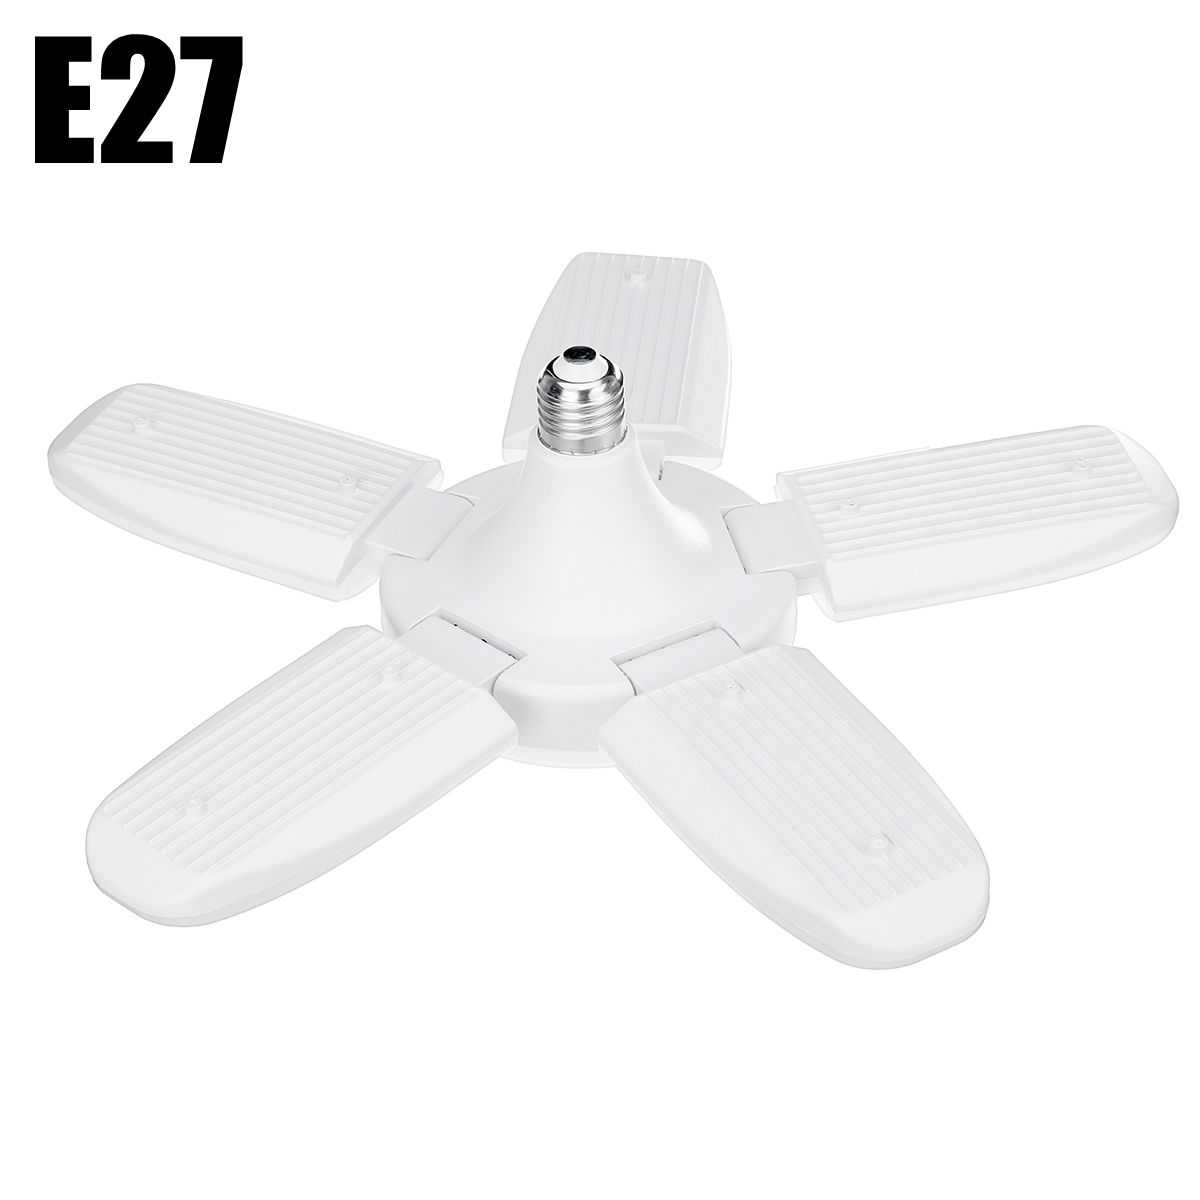 E27B22-Deformable-LED-Garage-Light-Bulb-80W-SMD2835-Ceiling-Fixture-Home-Shop-Workshop-Lamp-85-265V2-1737129